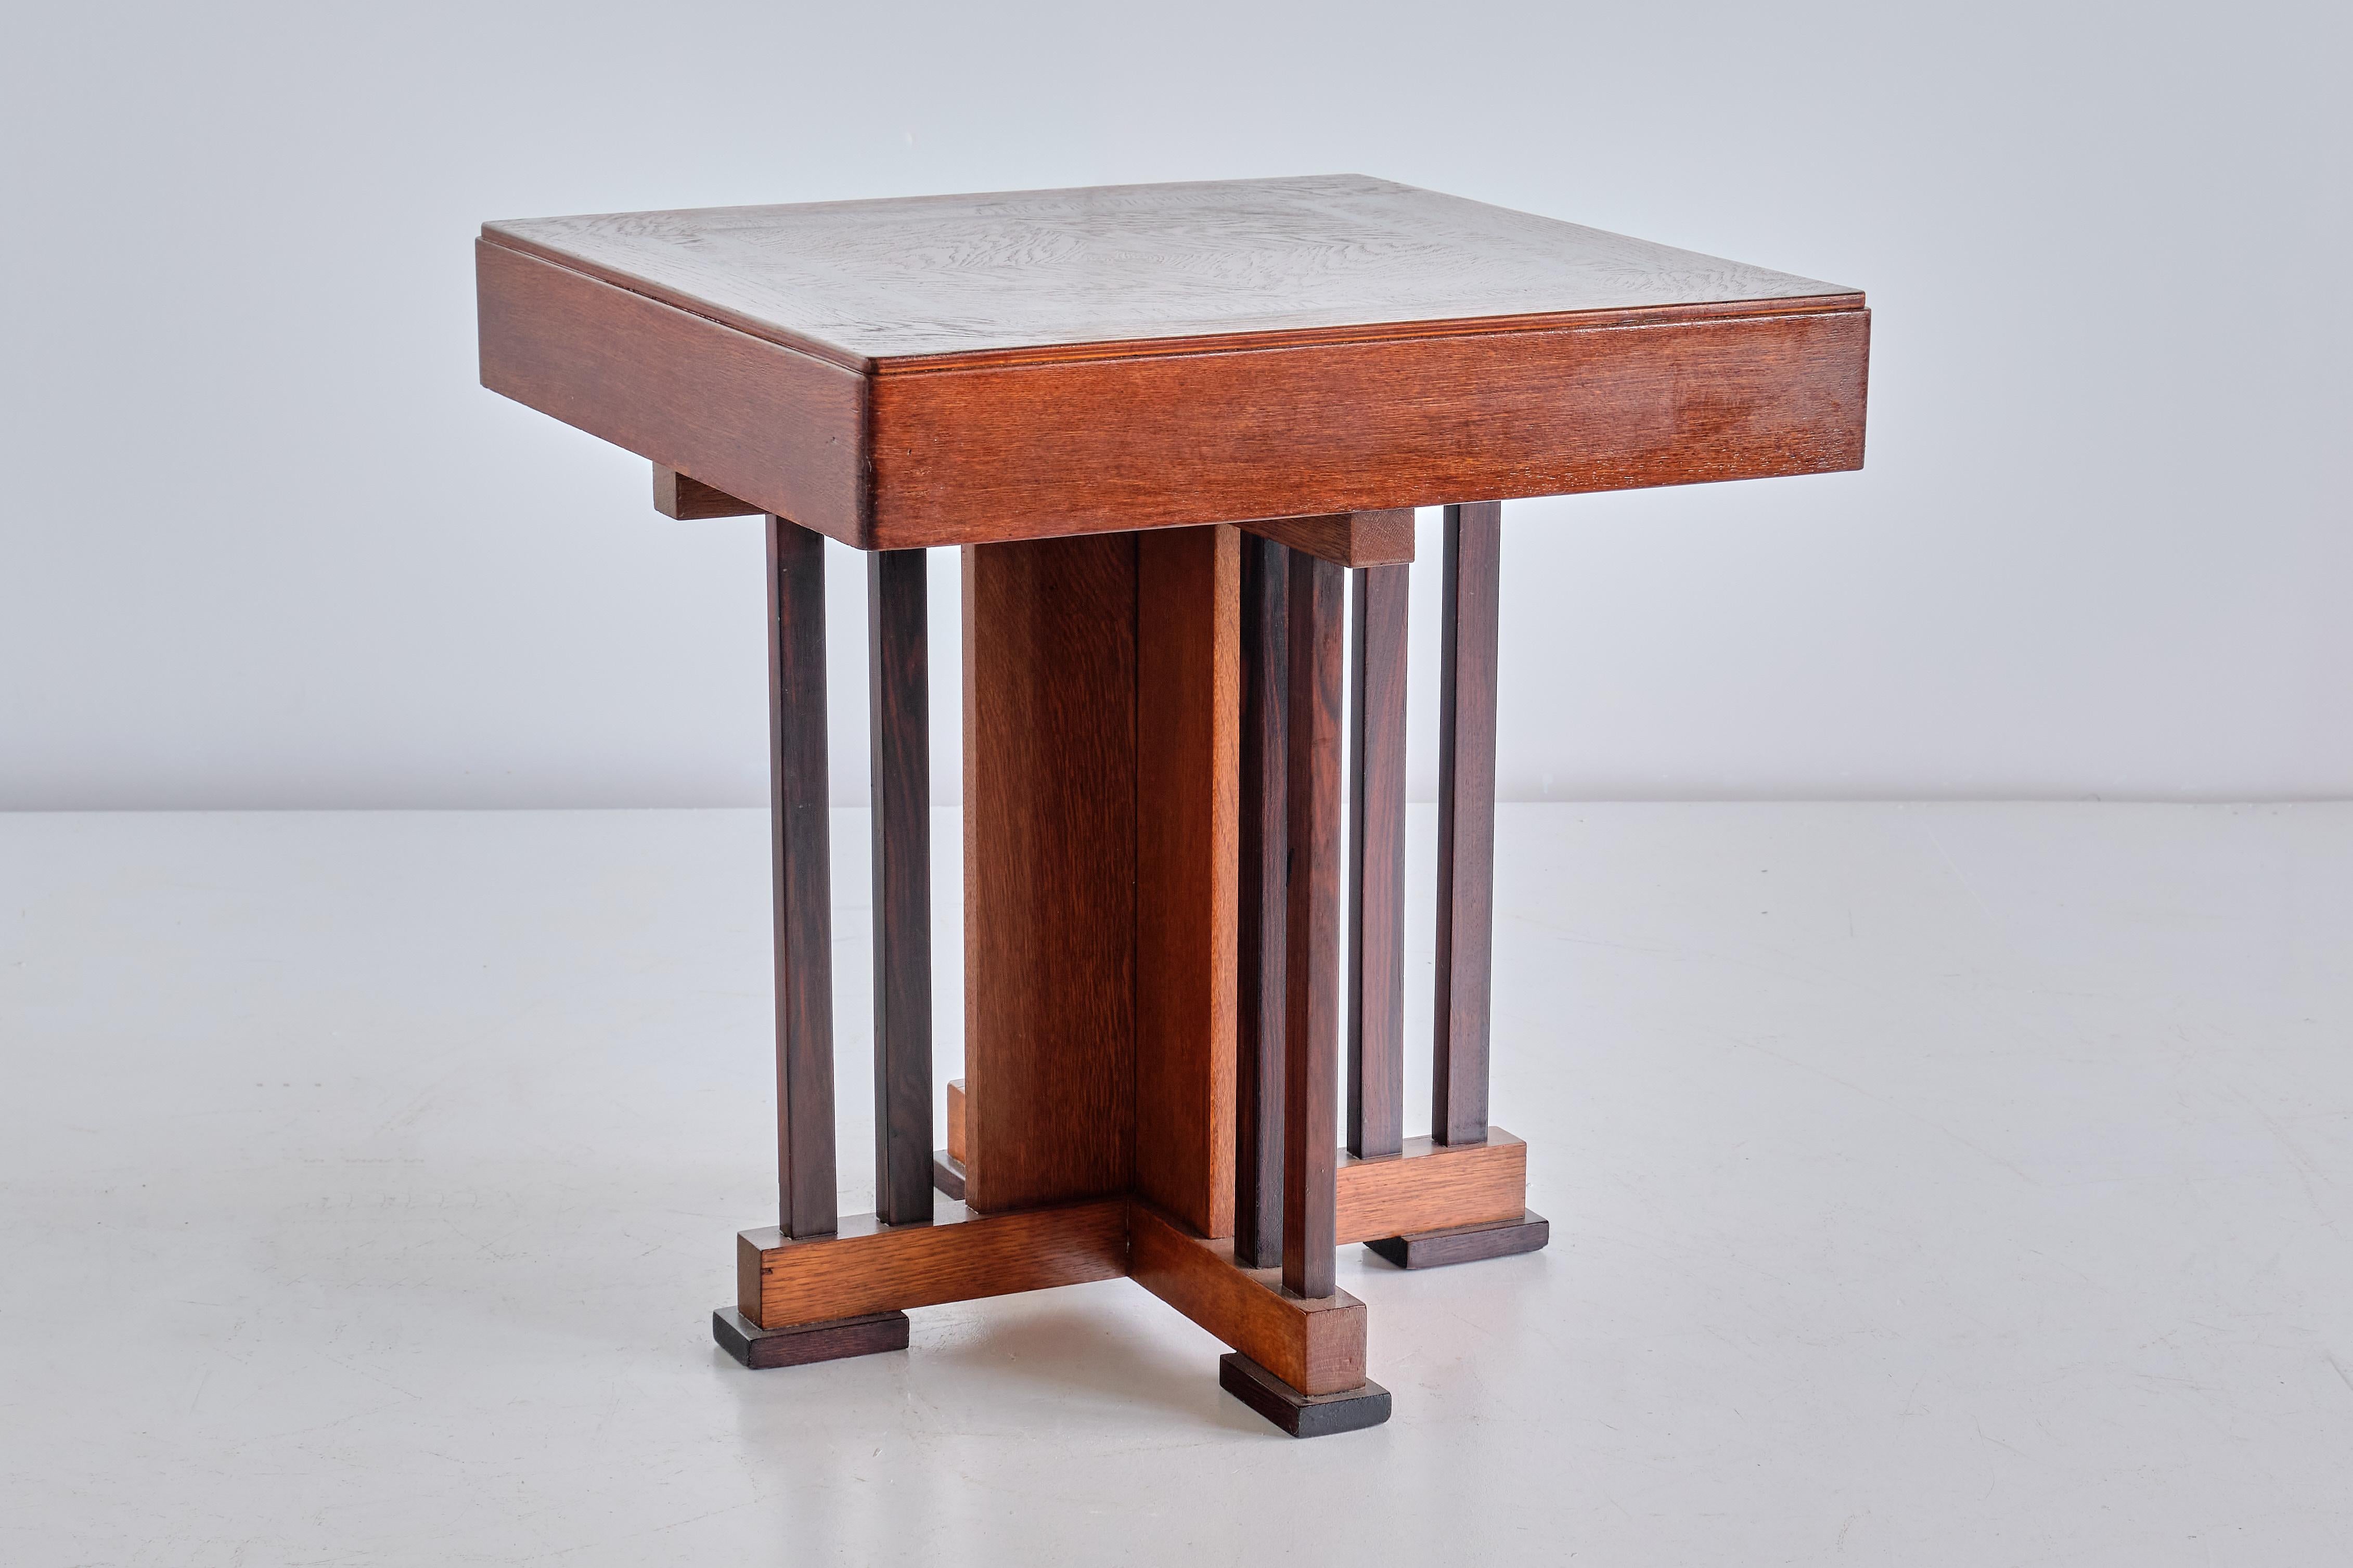 Cette rare table d'appoint a été conçue par P.E.L. Izeren et produite par la société néerlandaise Genneper Molen en 1930. Le cadre et le plateau sont en chêne massif et plaqué, les huit colonnes de soutien et les pieds rectangulaires sont en ébène